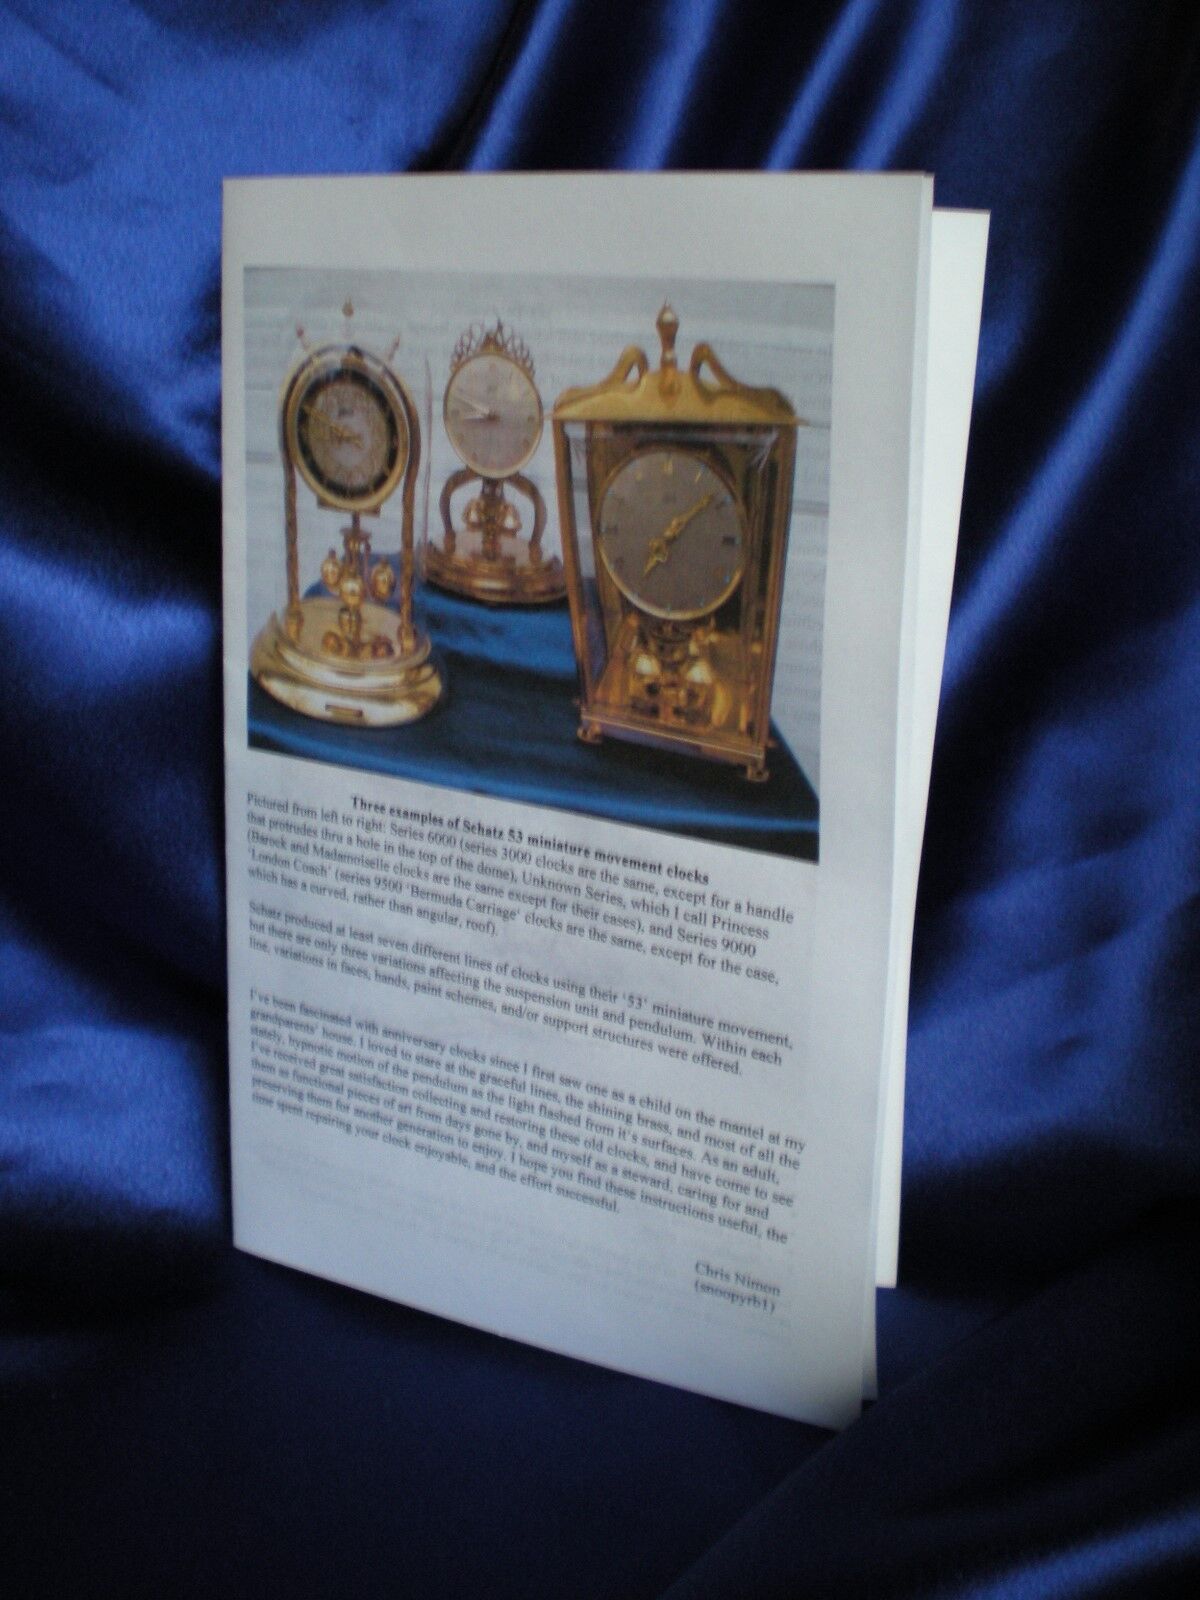 Instruction Booklets 4 Schatz 53 400 Day Anniversary Clock Suspension Spring 